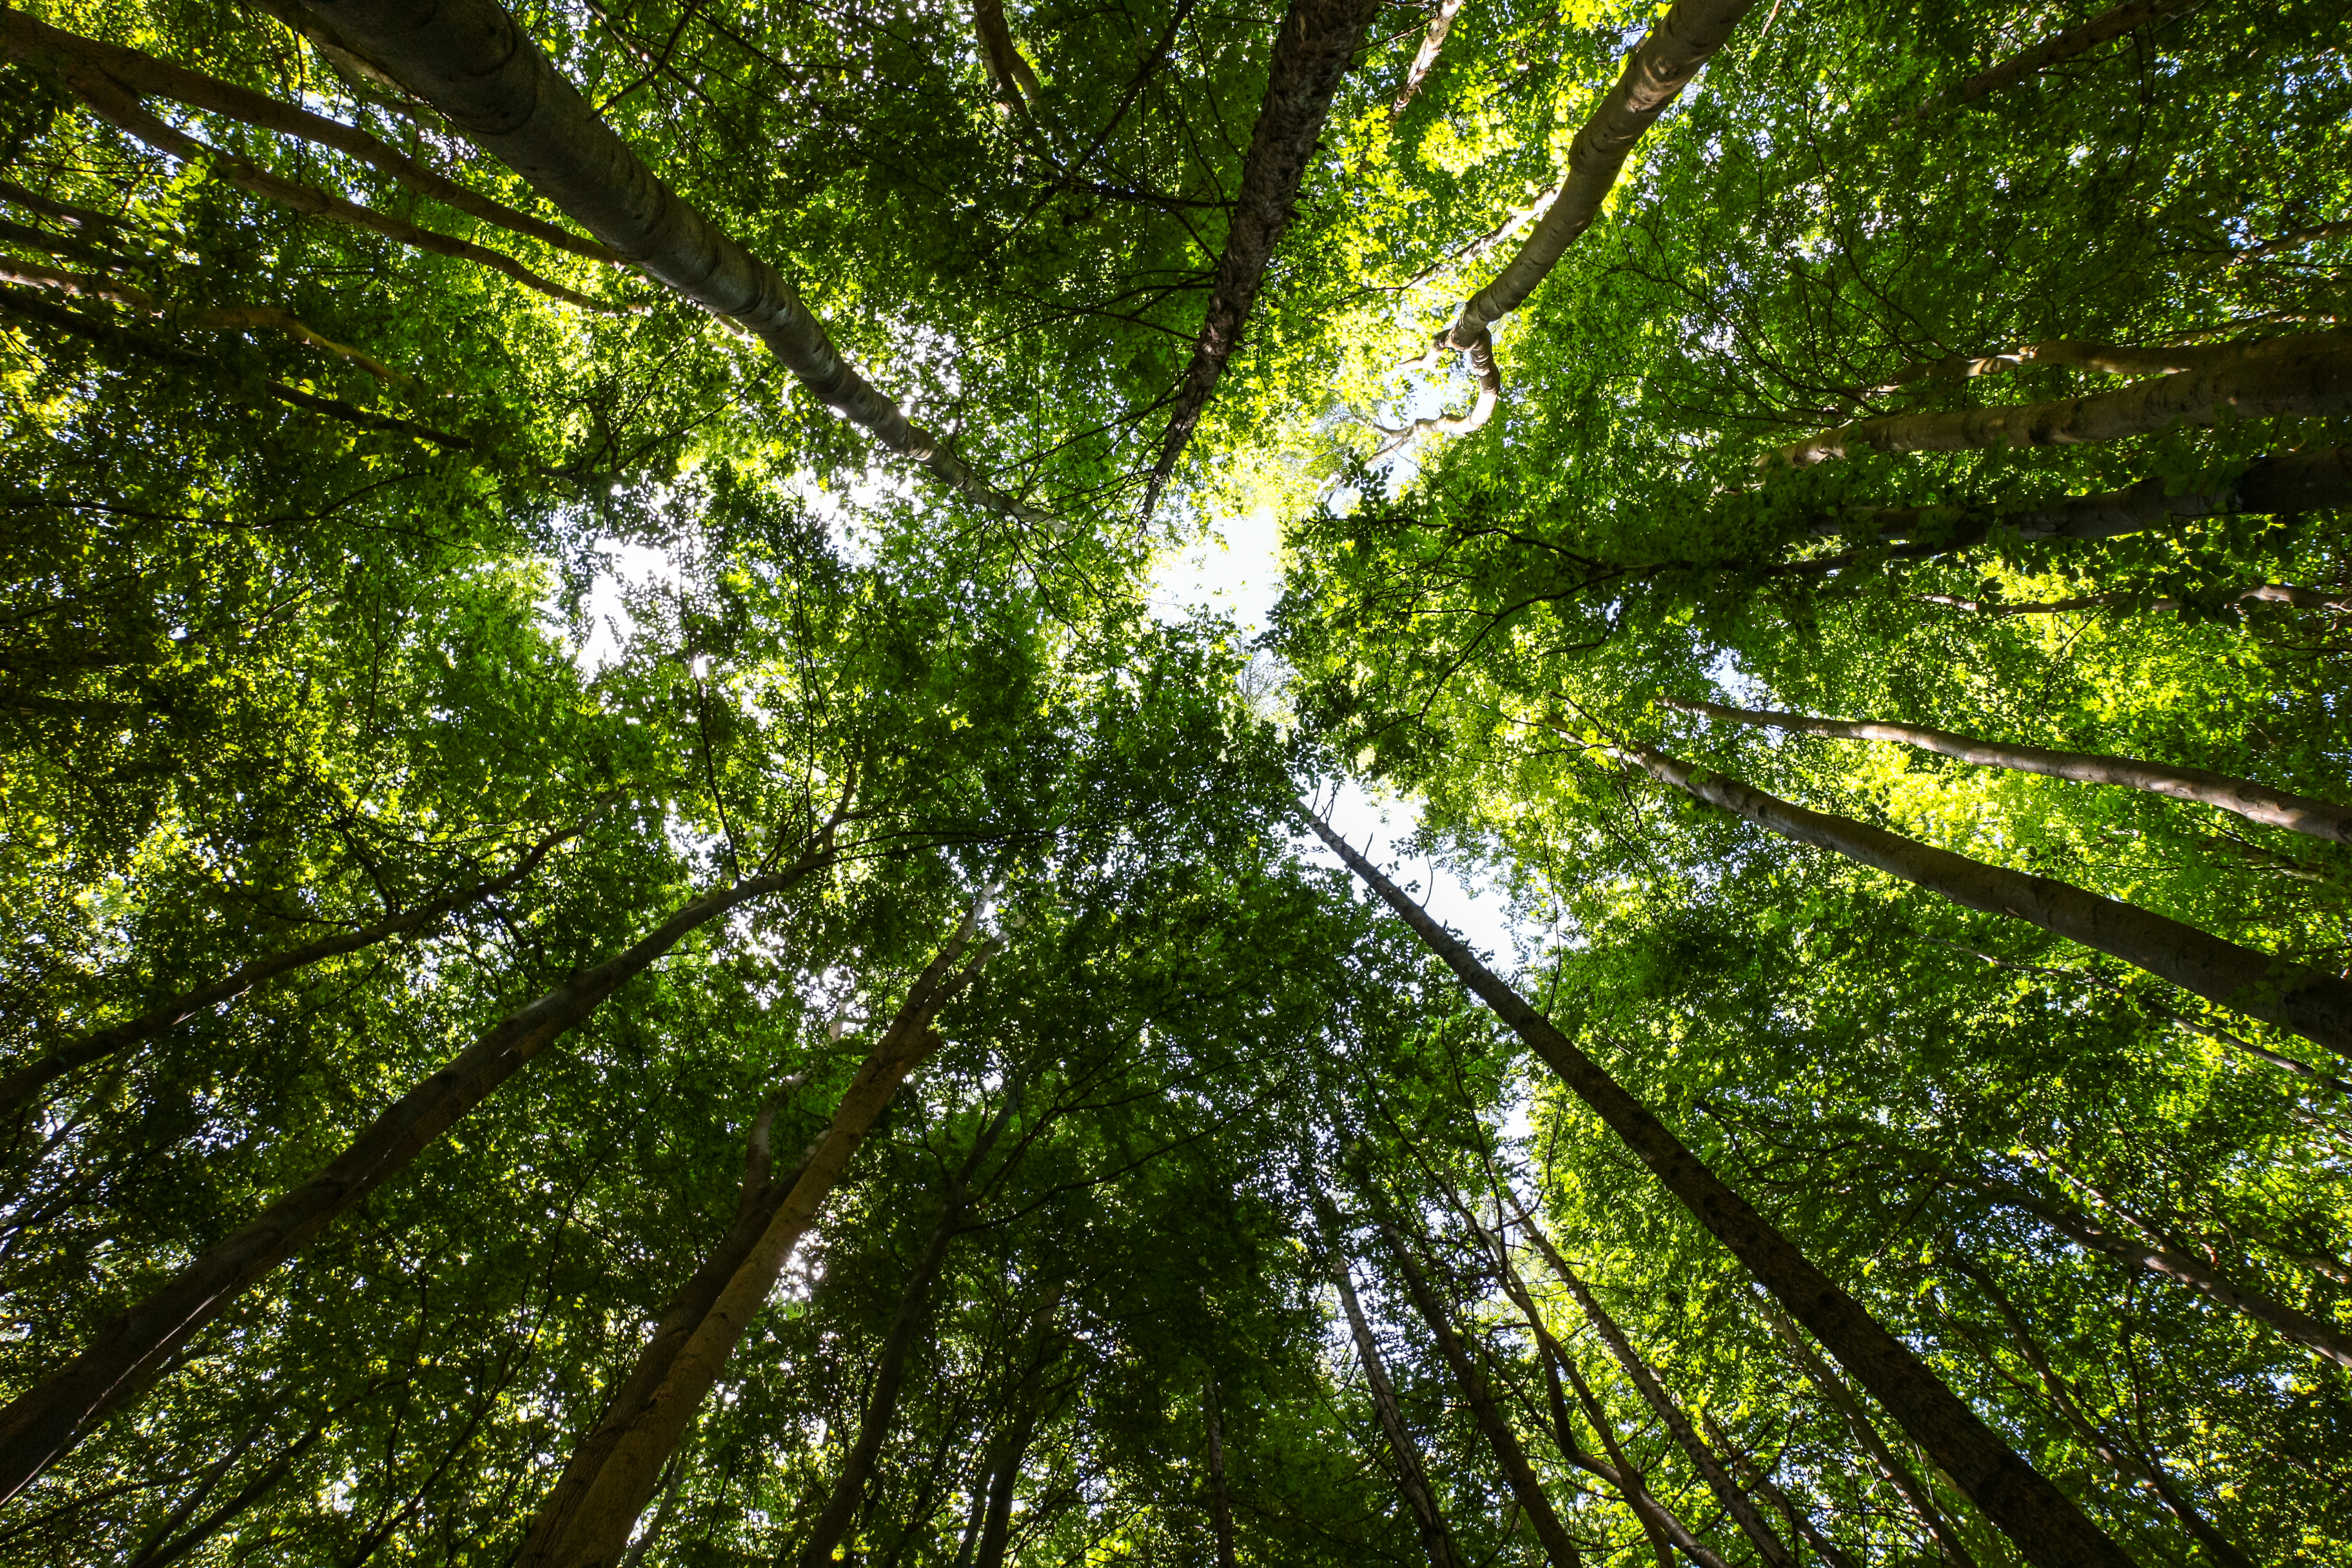 Tematsko izvješće 21/2021: Financijska sredstva EU-a za bioraznolikost i klimatske promjene u šumama EU-a: pozitivni, ali ograničeni rezultati